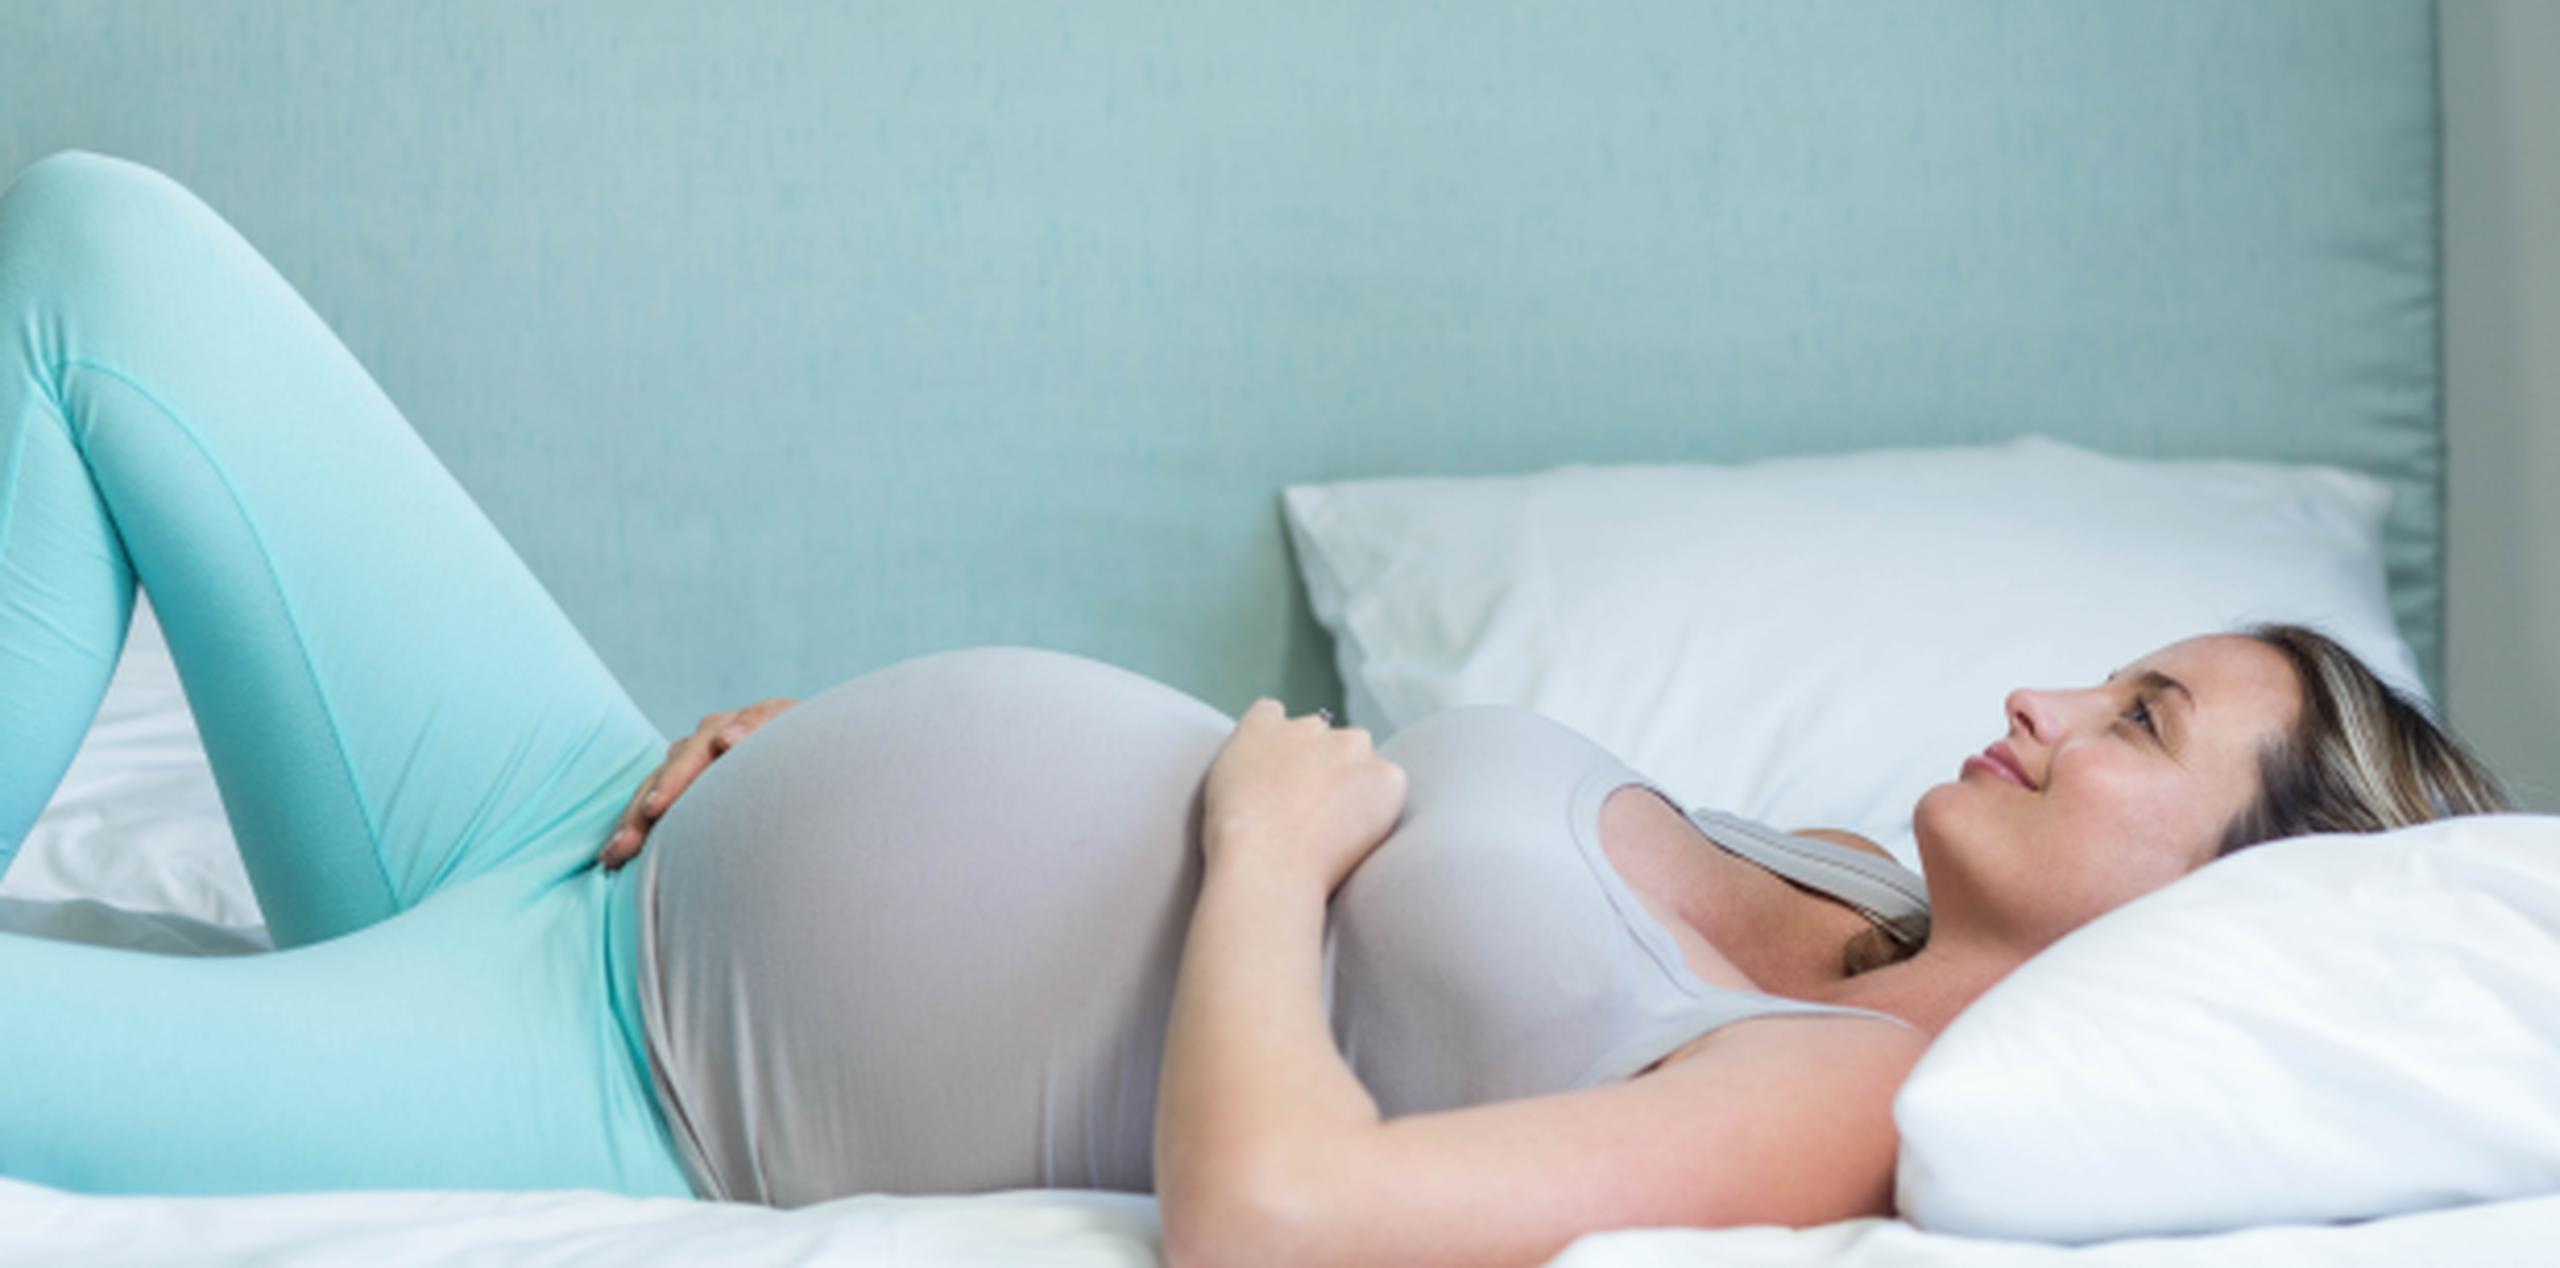 De 30 a 32 años, el cuerpo femenino tiene una reserva de 12% de ovarios. (Shutterstock)